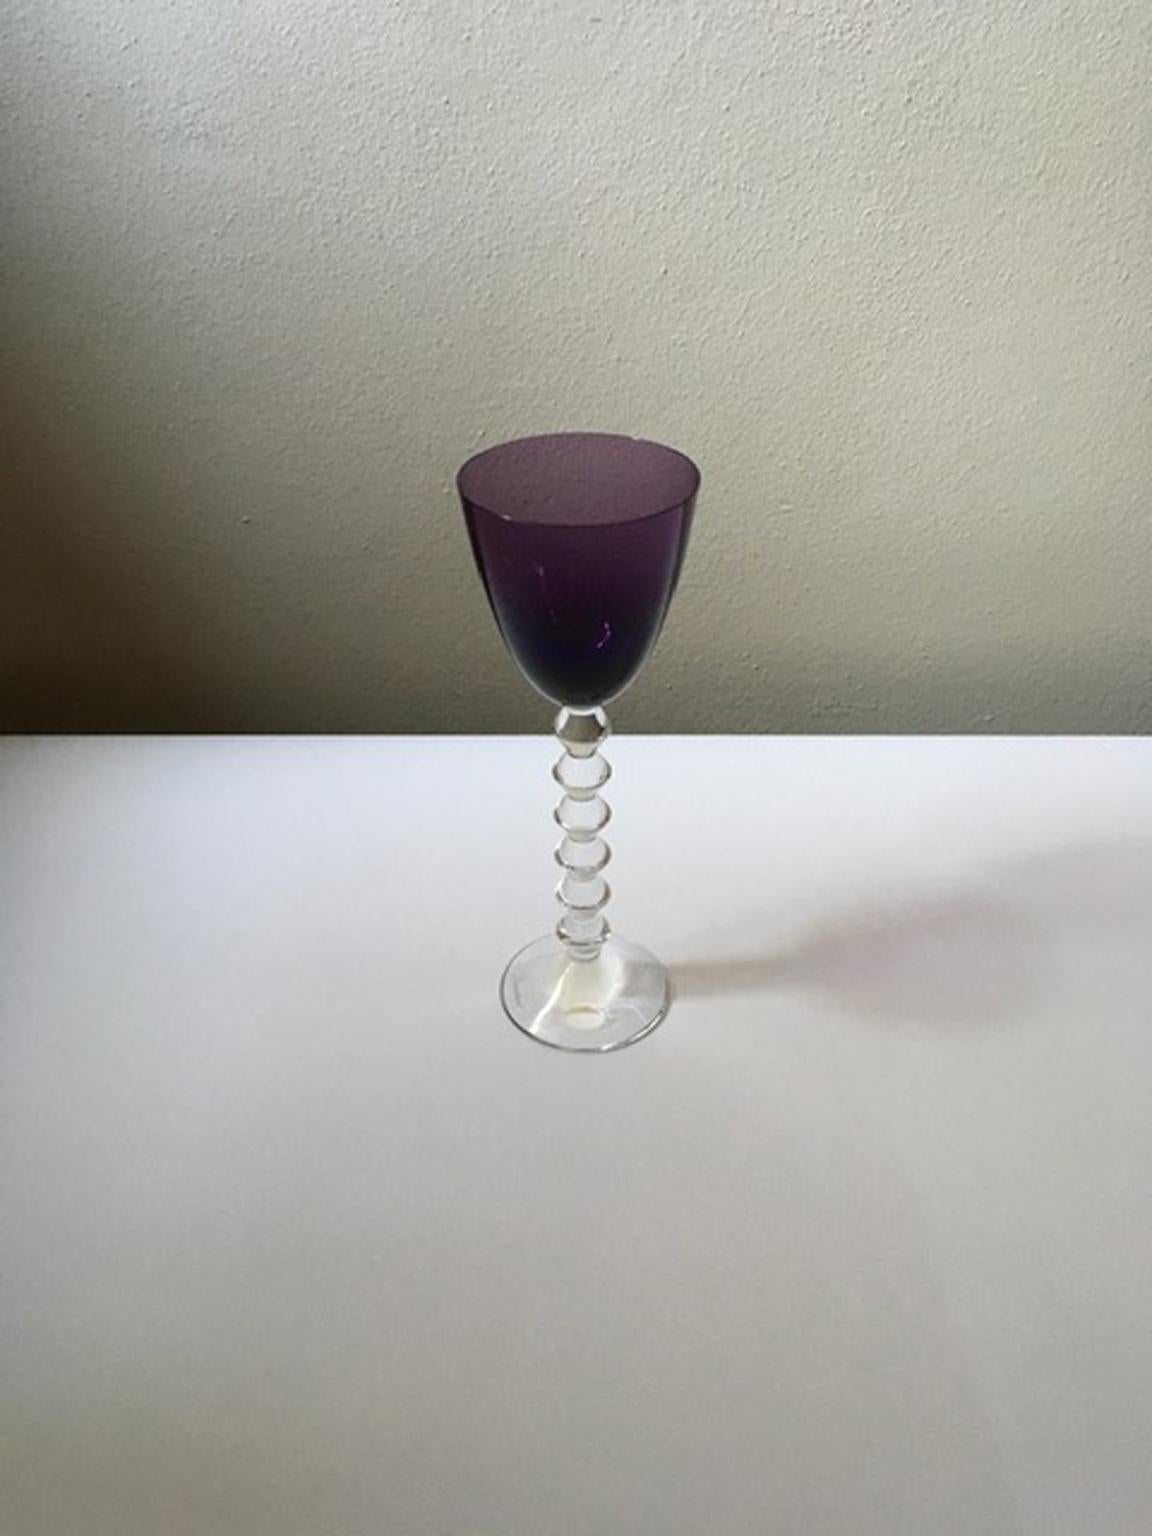 Baccarat Purple Crystal Goblet, France 6